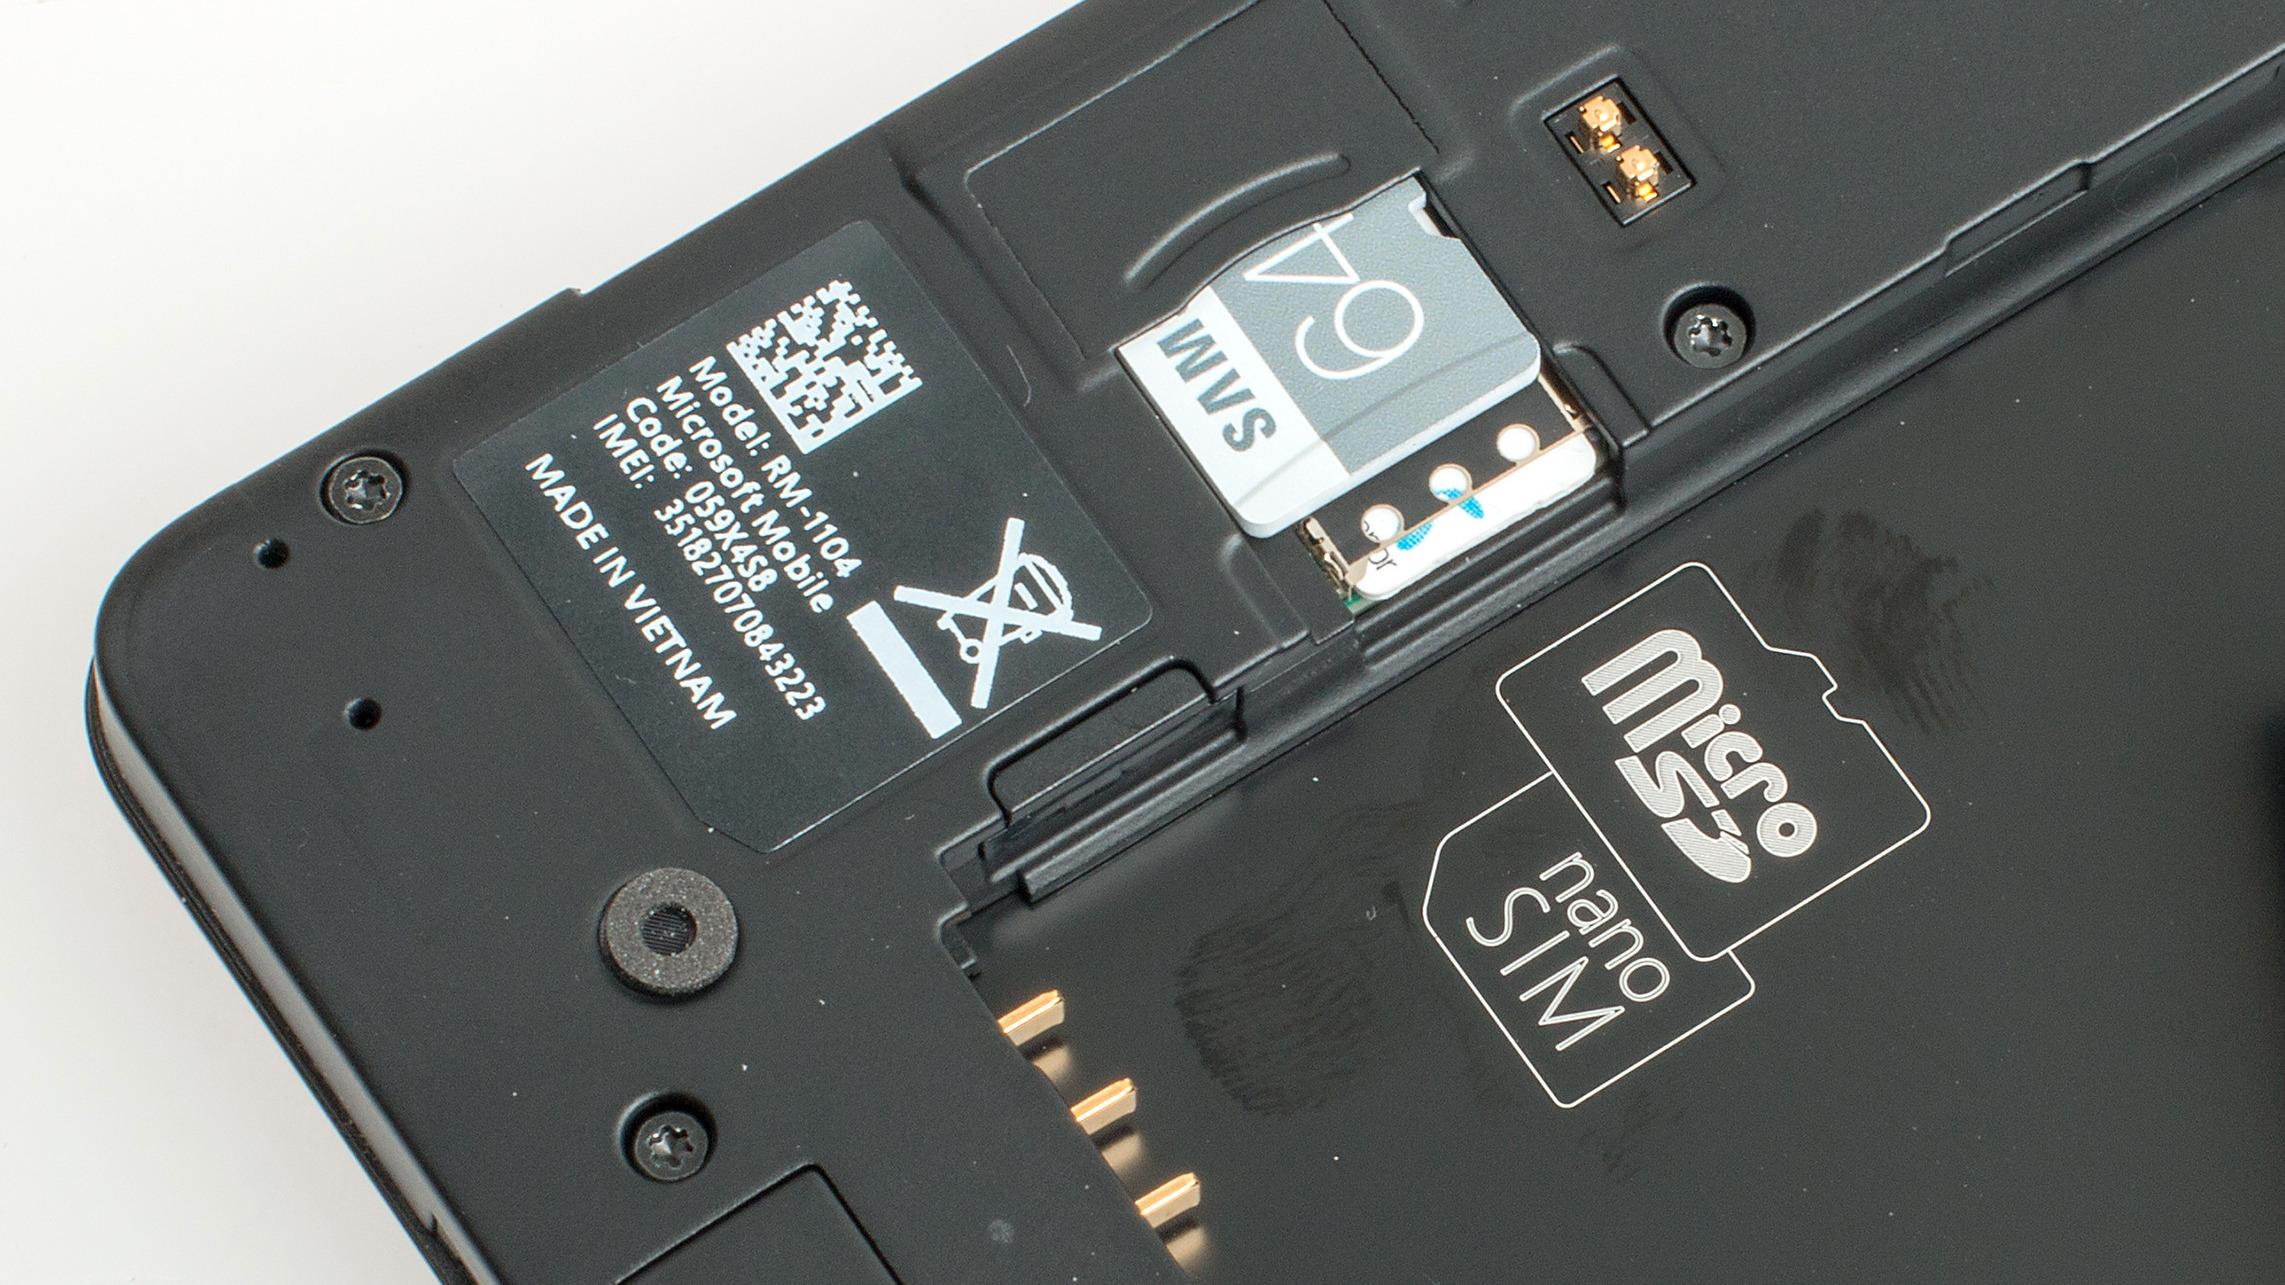 Under batteridekselet finner du plass til nano-SIM og et MicroSD-kort. Foto: Kurt Lekanger, Tek.no